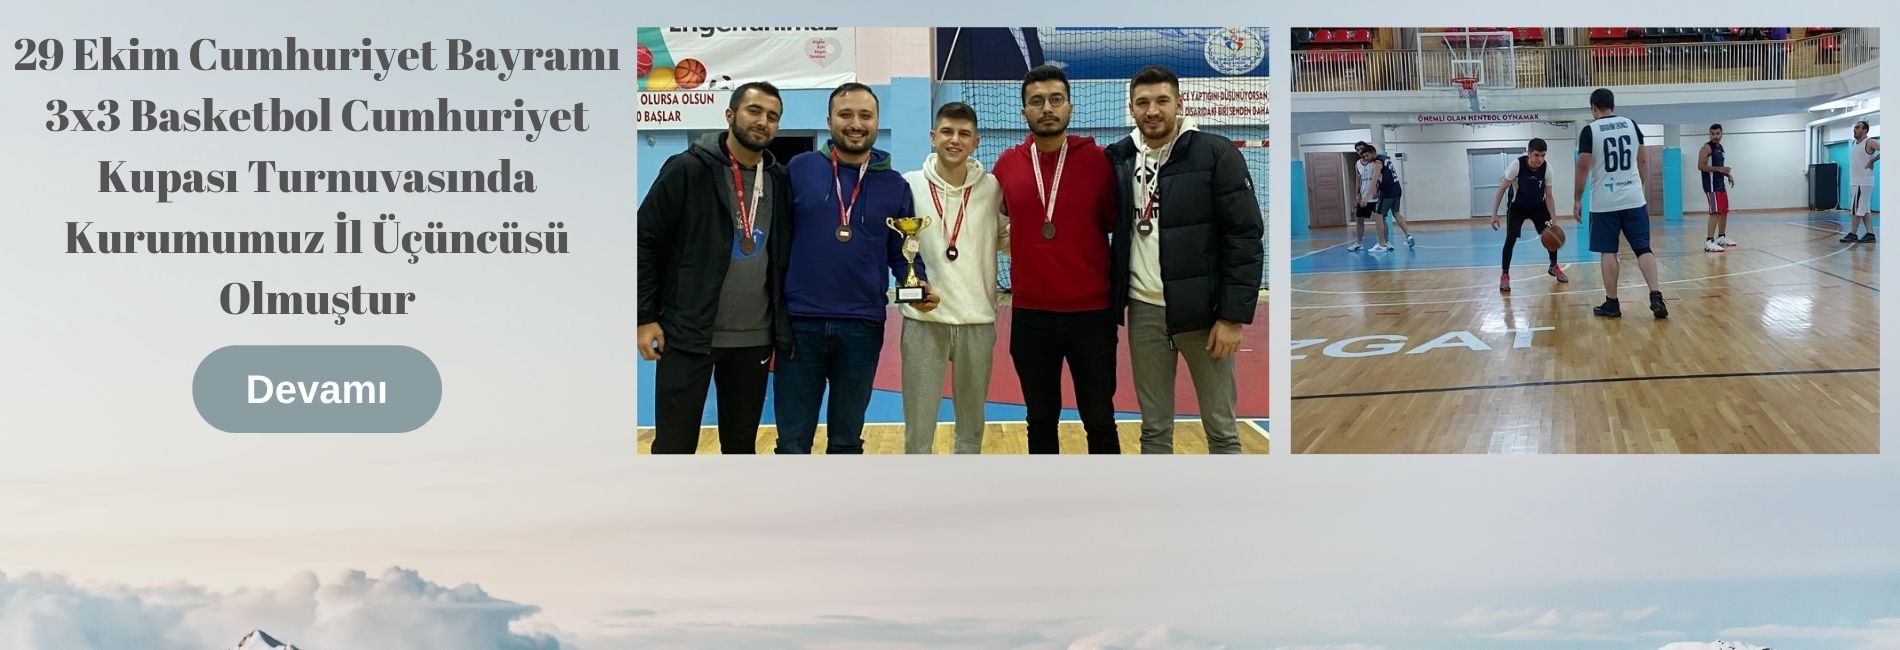 29 Ekim Cumhuriyet Bayramı 3x3 Basketbol Cumhuriyet Kupası Turnuvasında Kurumumuz İl Üçüncüsü Olmuştur